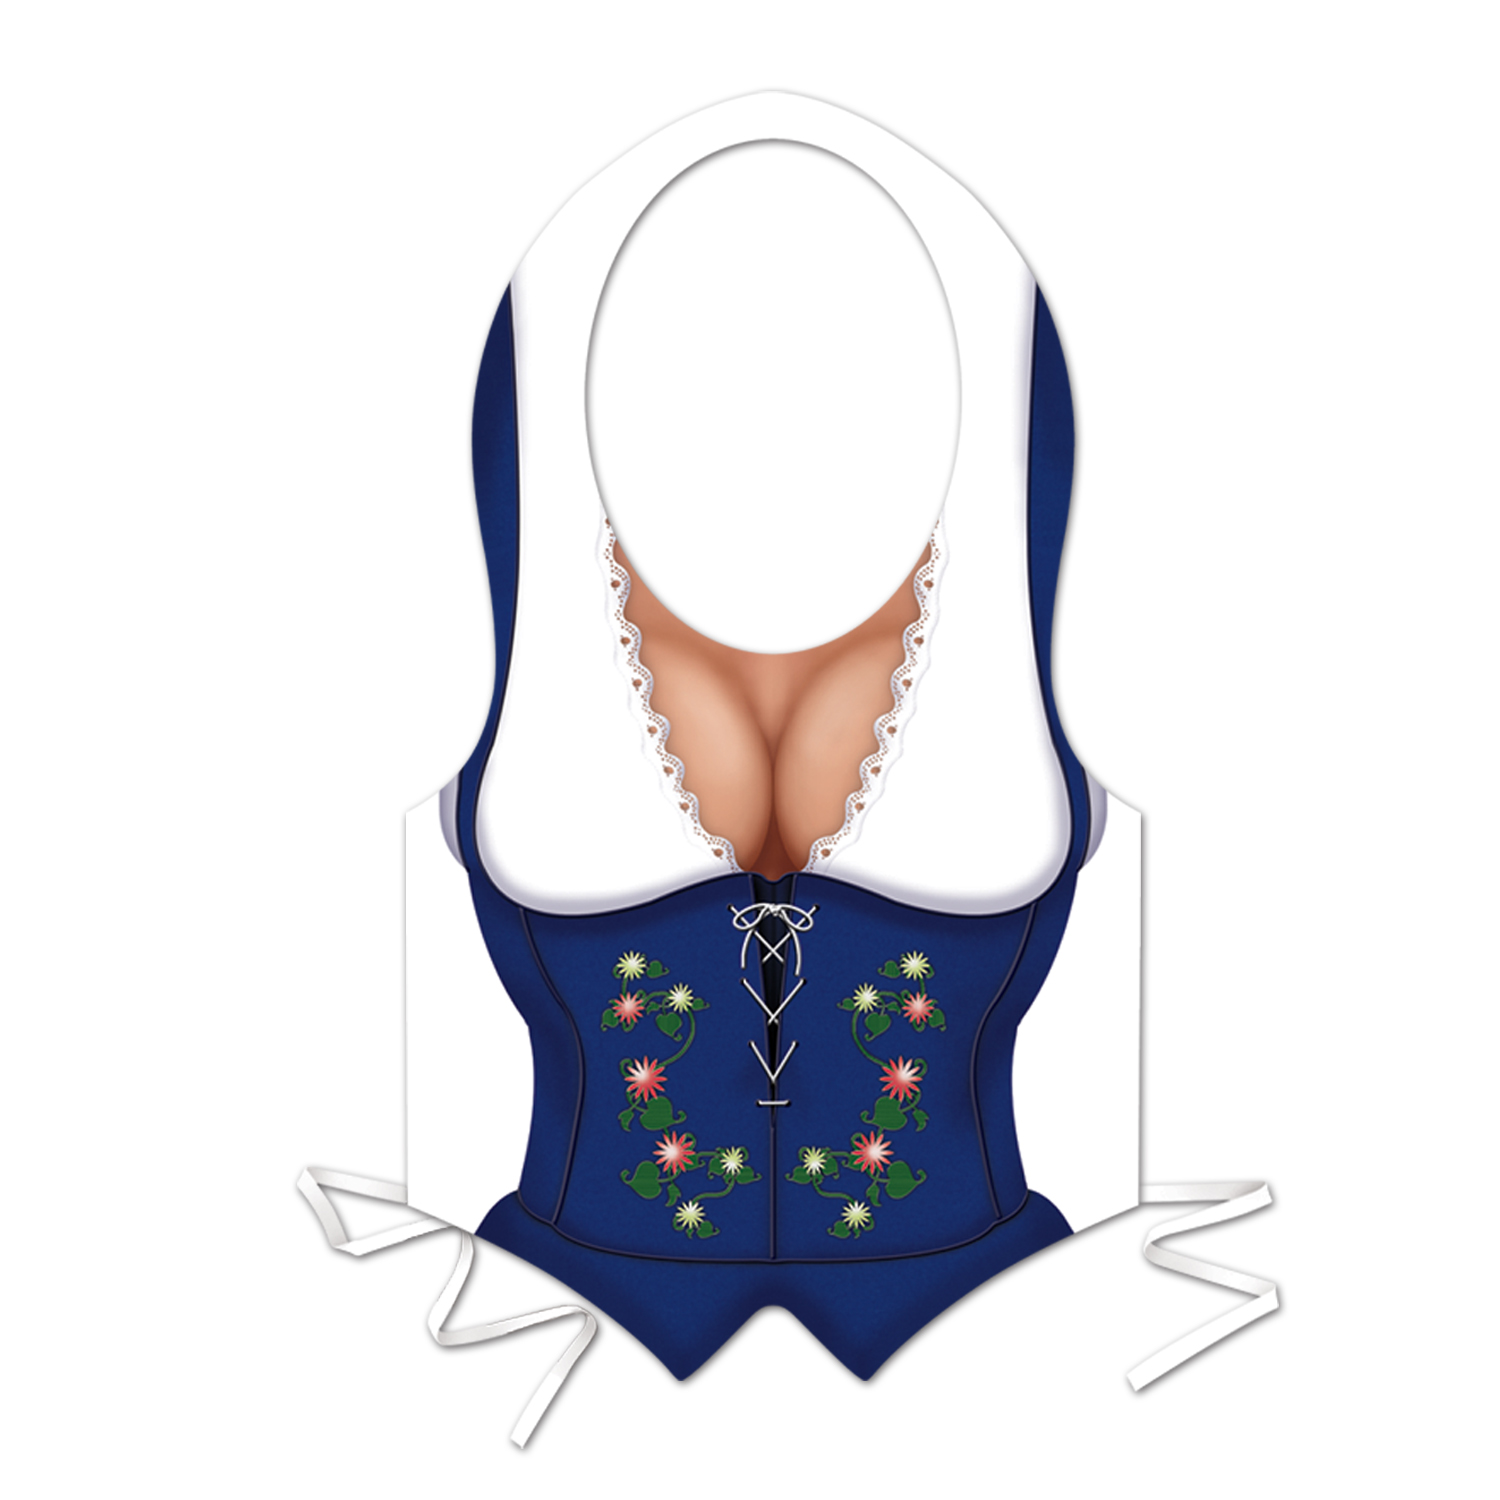 Pkgd Plastic Fraulein Vest